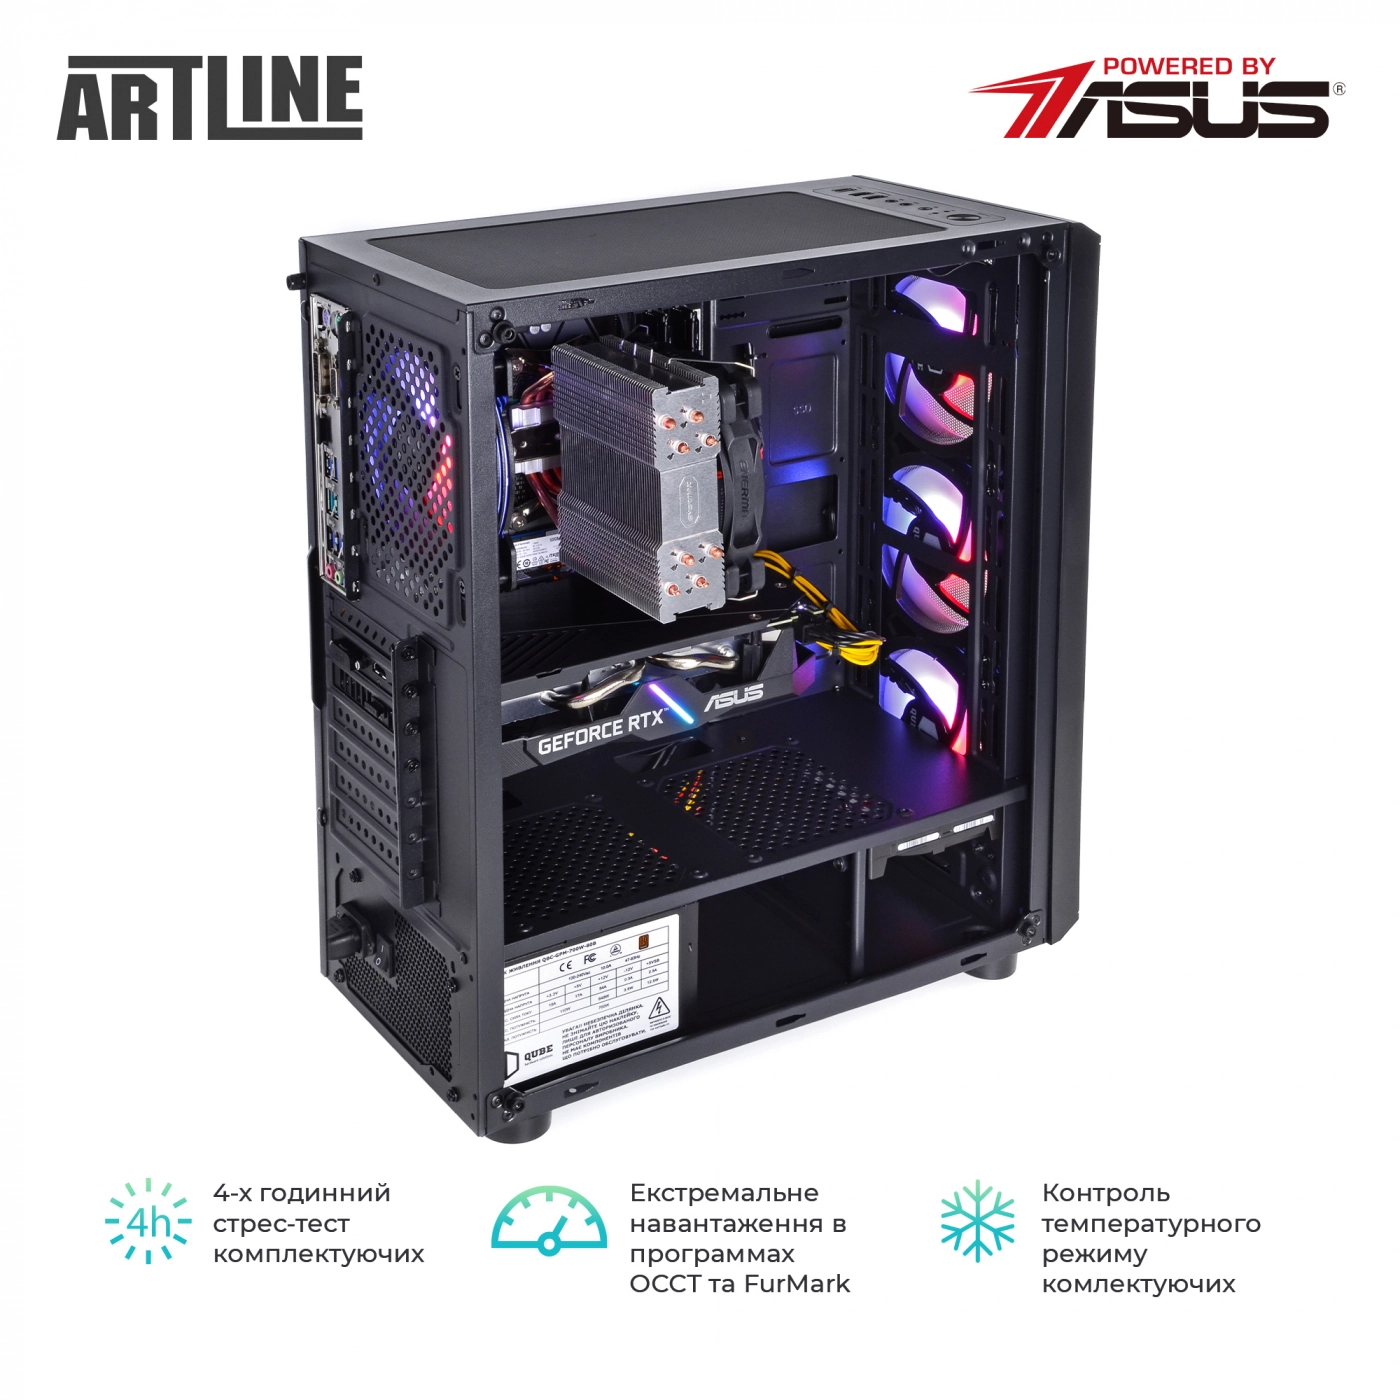 Купить Компьютер ARTLINE Gaming X85v19 - фото 9